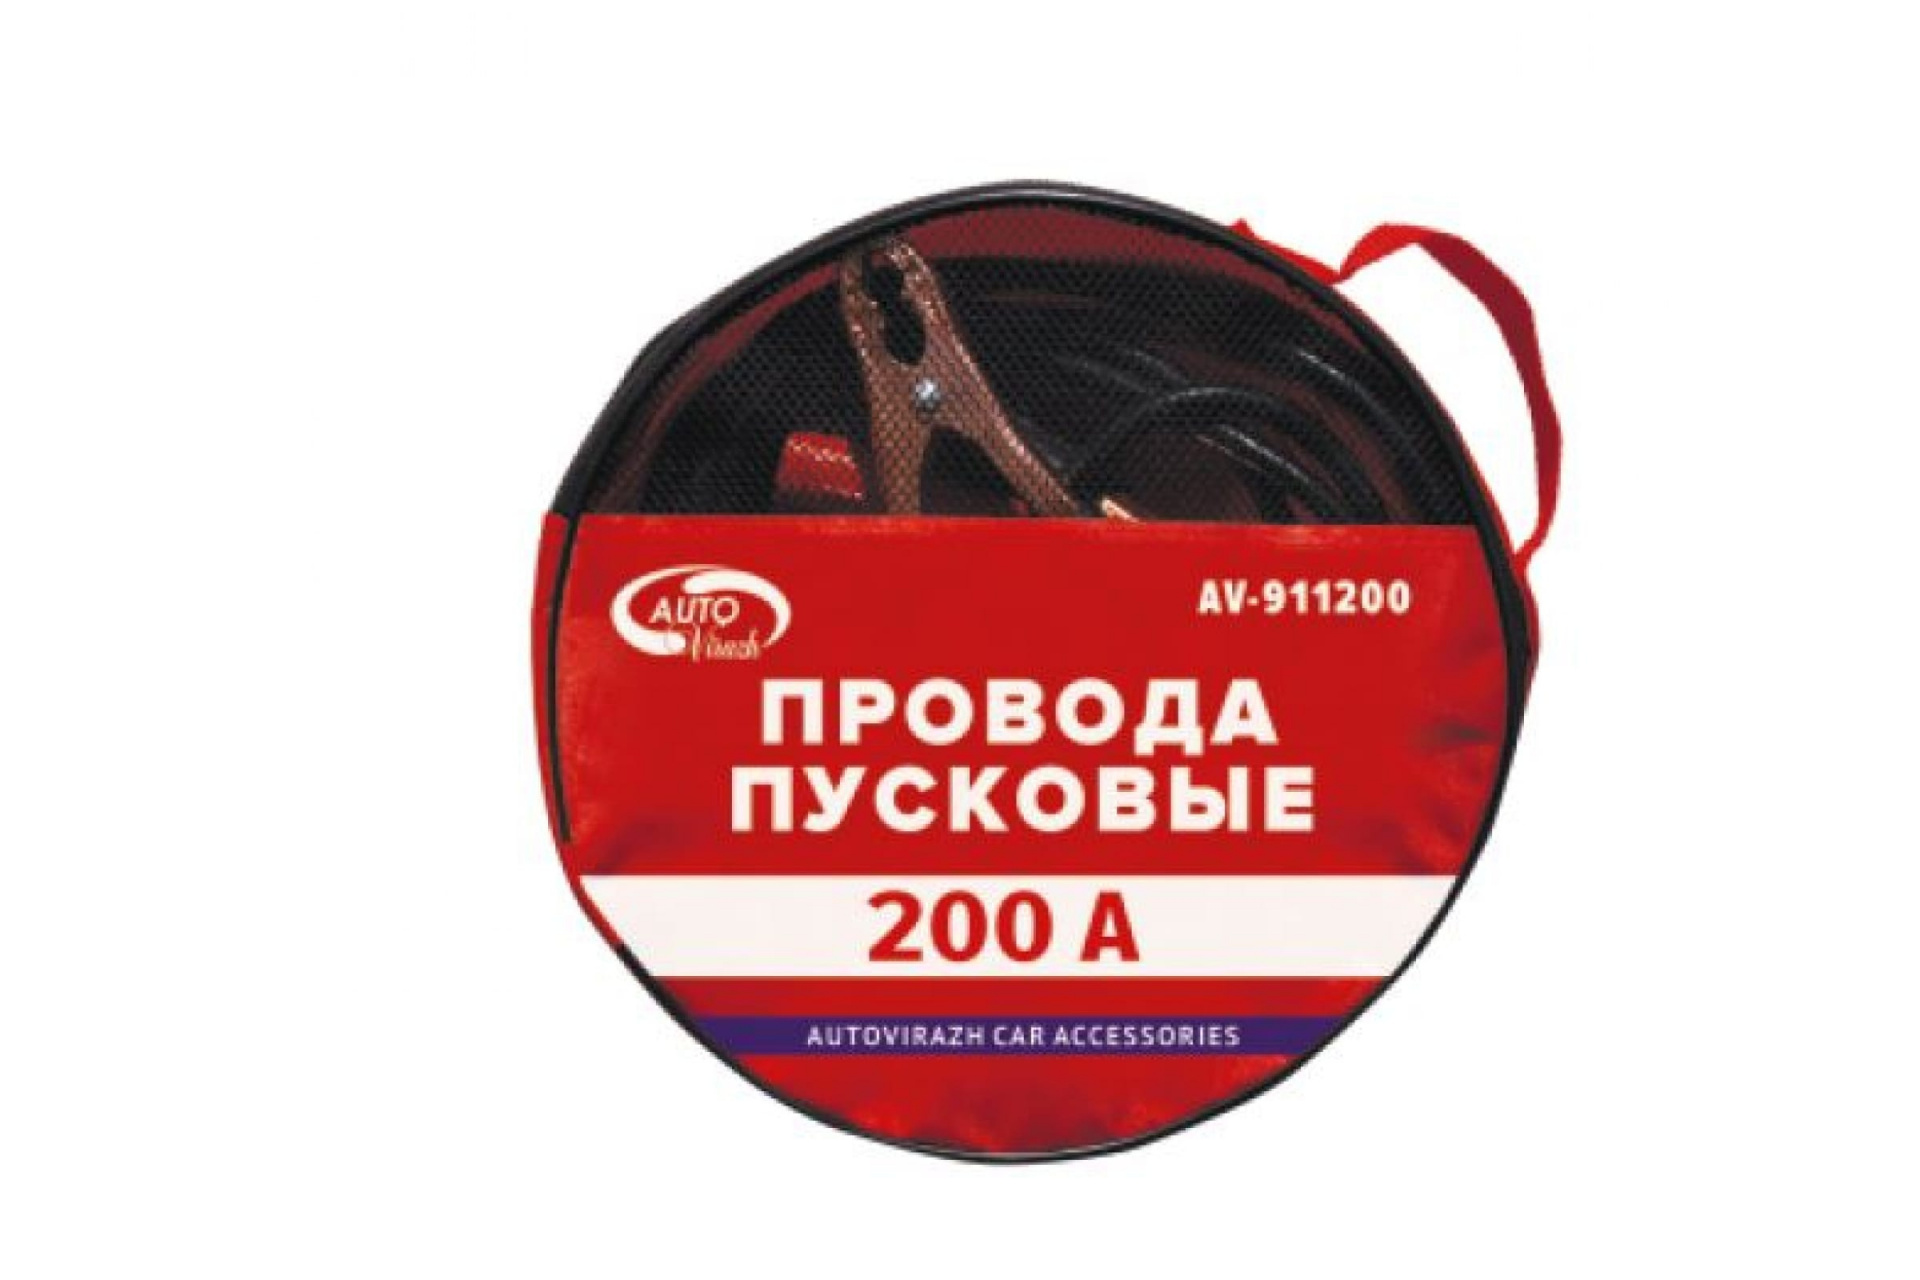 Провода прикуривания Osram. AUTOVIRAZH av-276225 0.22kg. Провода прикуривателя 200а в сумке фото. Провода Агрессор логотип. Купим кабель липецк